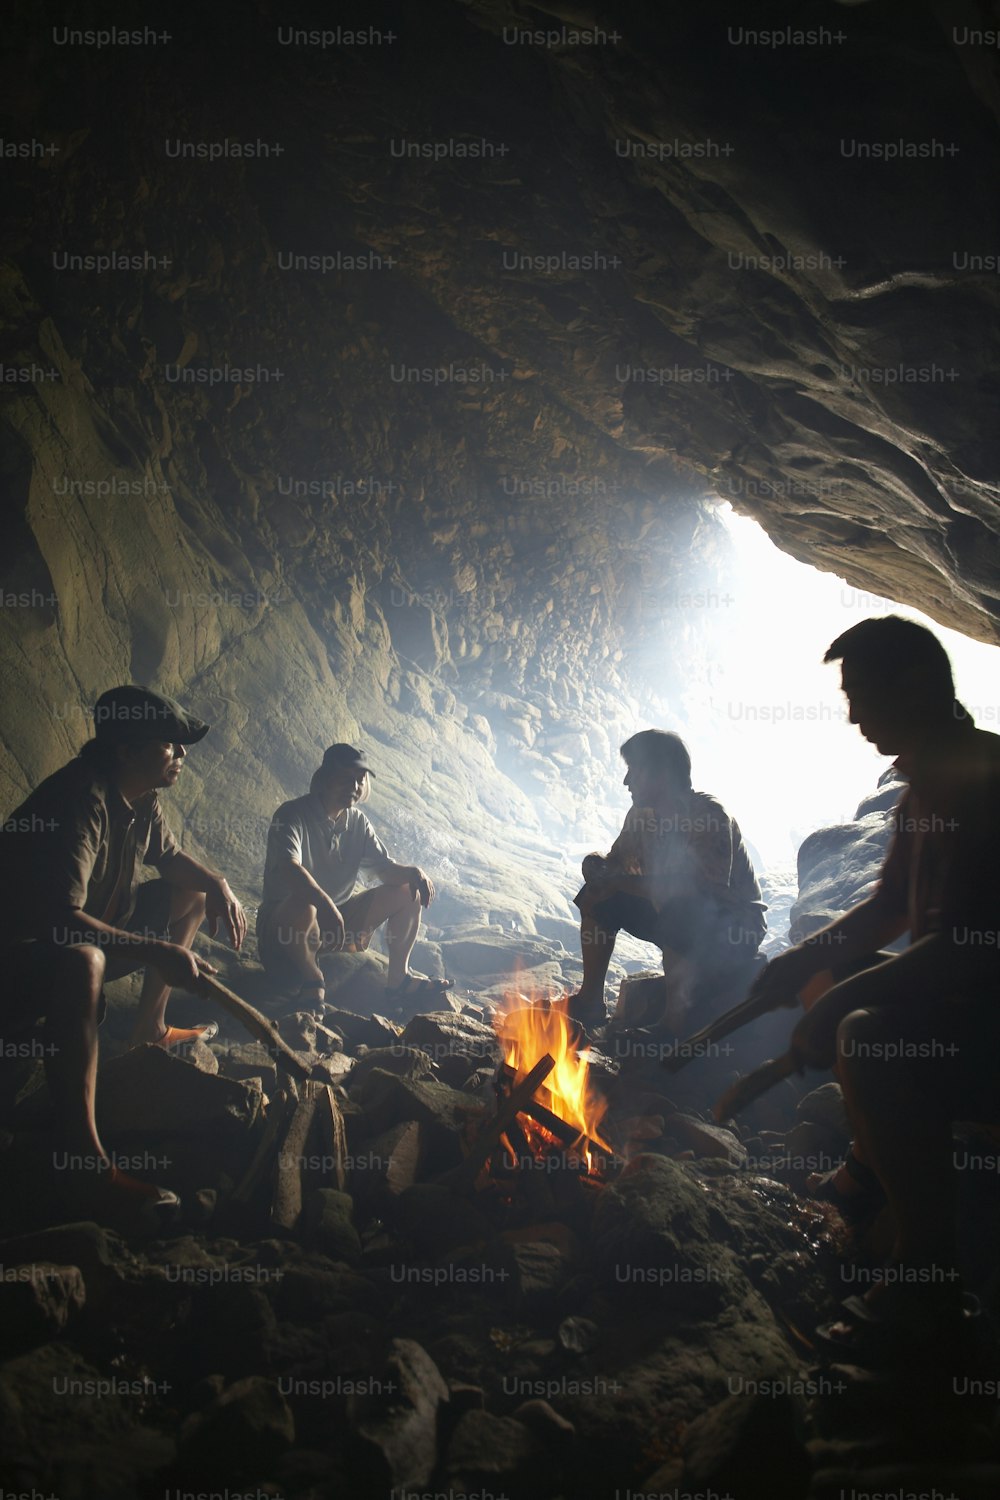 동굴에서 불 주위에 앉아 있는 한 무리의 사람들